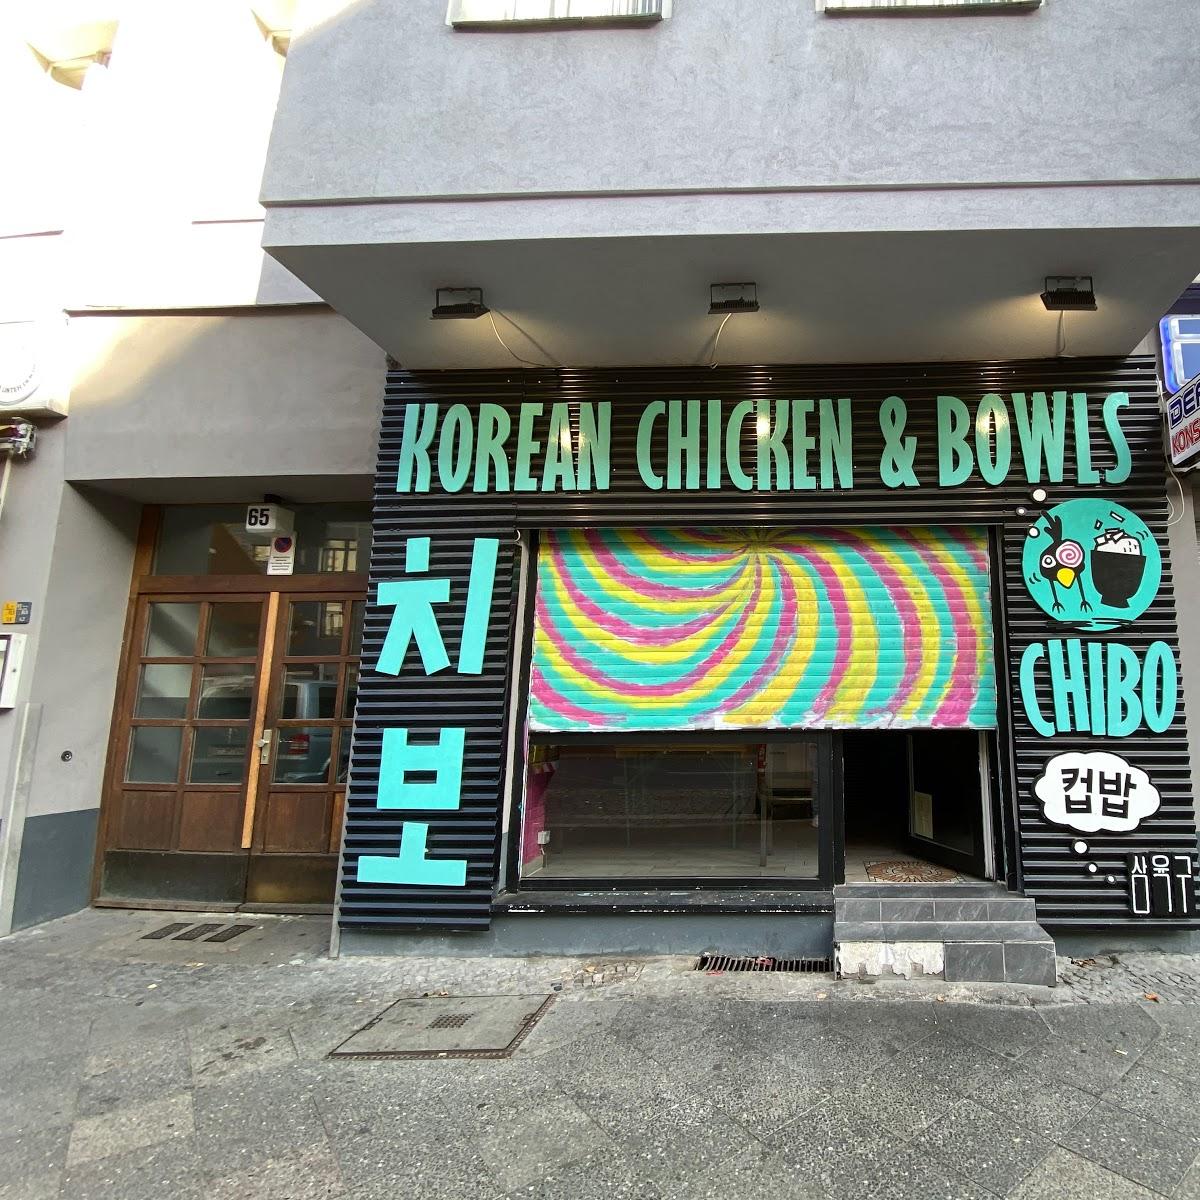 Restaurant "Chibo - Korean Chicken & Bowls" in Berlin